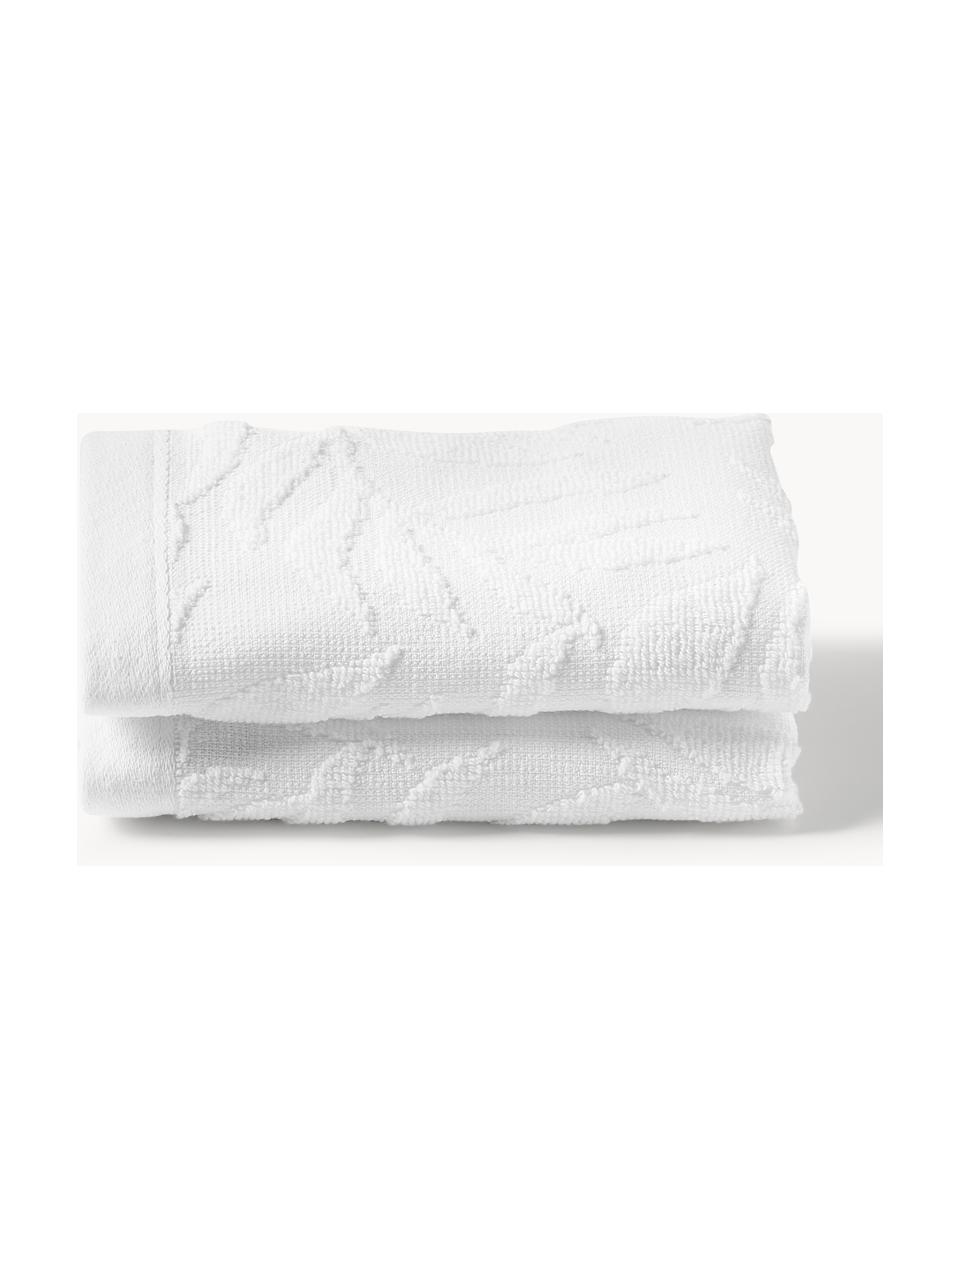 Toallas lavabos Leaf, tamaños diferentes, Blanco, Set de 3 (toalla tocador, toalla lavabo y toalla ducha)